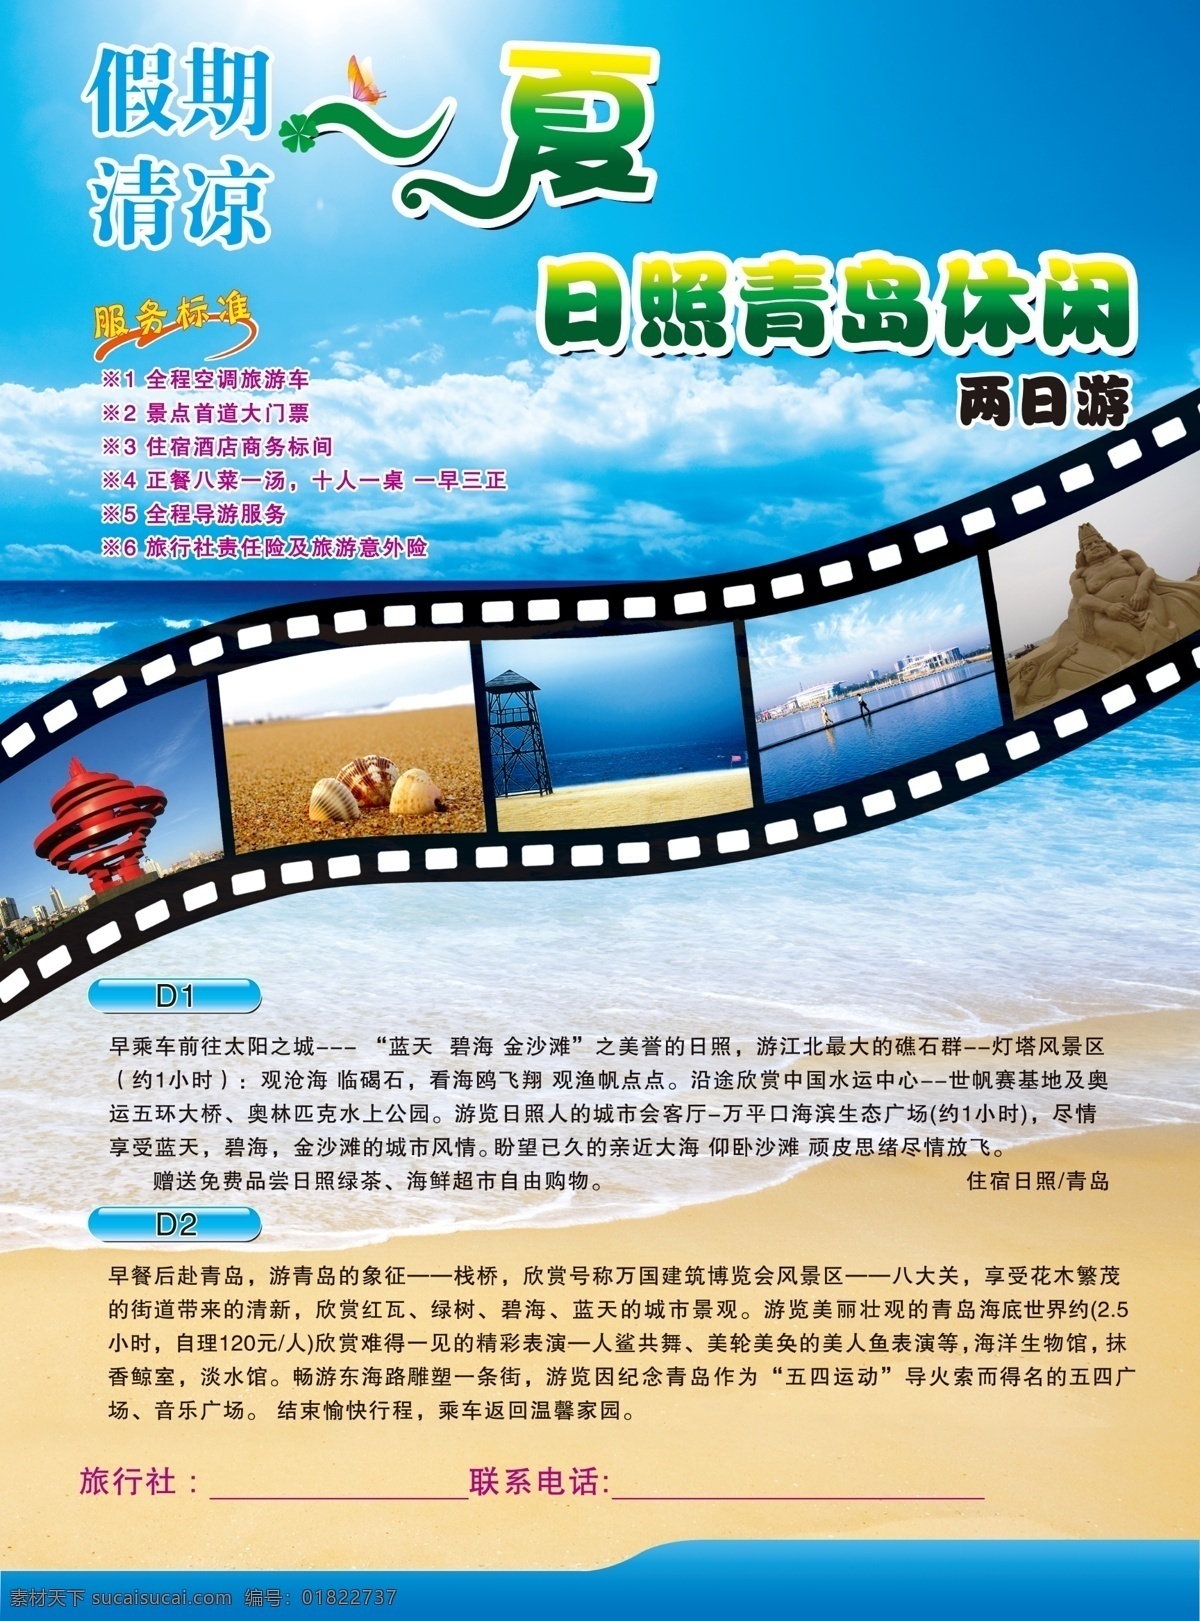 青岛旅游单页 相册 青岛海 沙滩 清凉一夏 旅游宣传单页 dm宣传单 广告设计模板 源文件